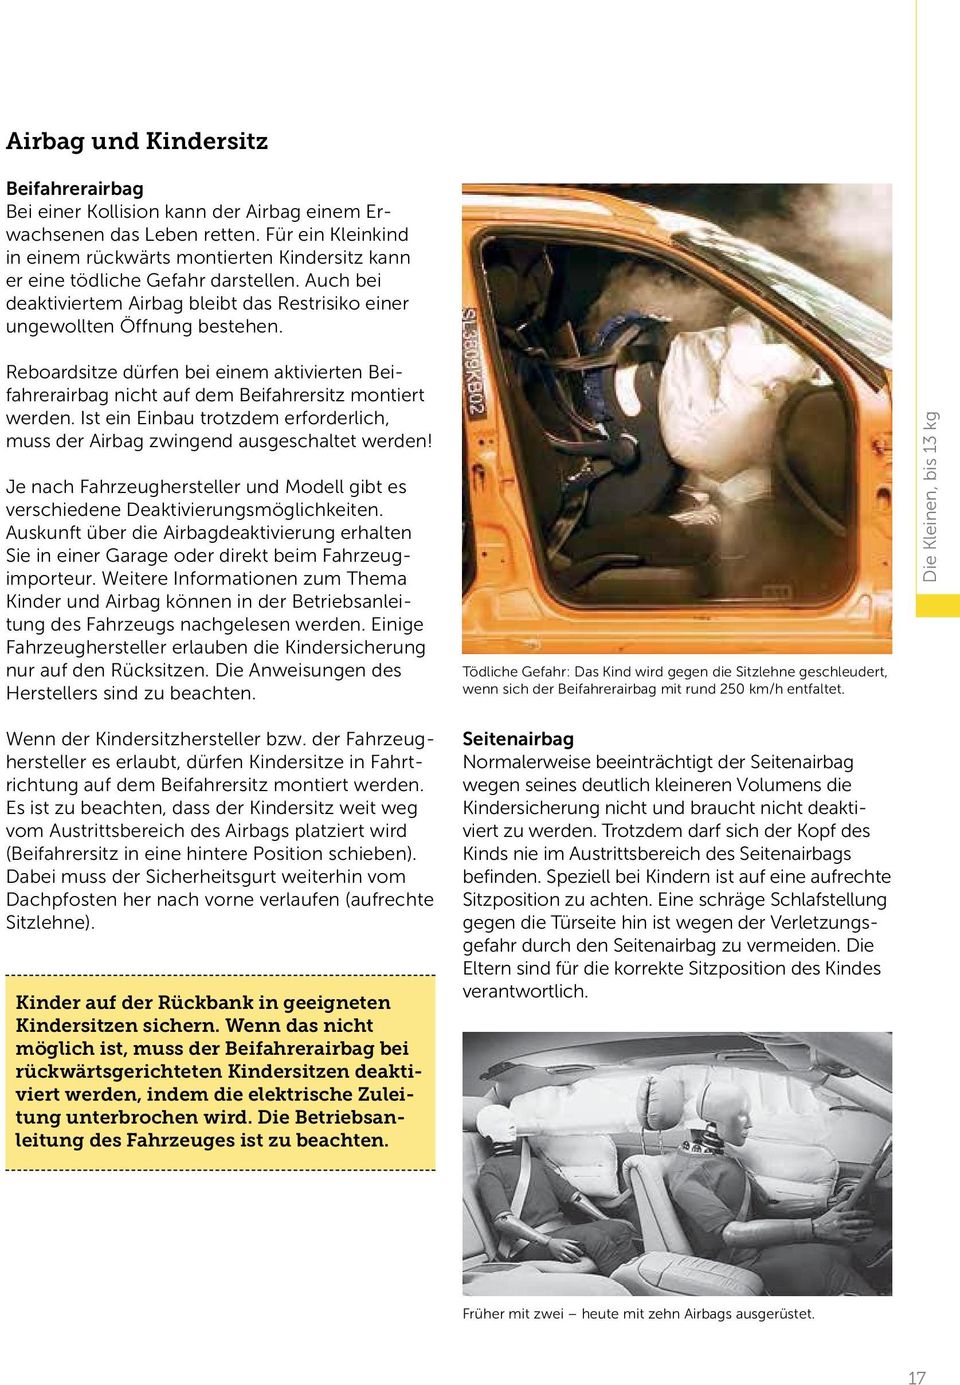 Reboardsitze dürfen bei einem aktivierten Beifahrer airbag nicht auf dem Beifahrersitz montiert werden. Ist ein Einbau trotzdem erforderlich, muss der Airbag zwingend ausgeschaltet werden!